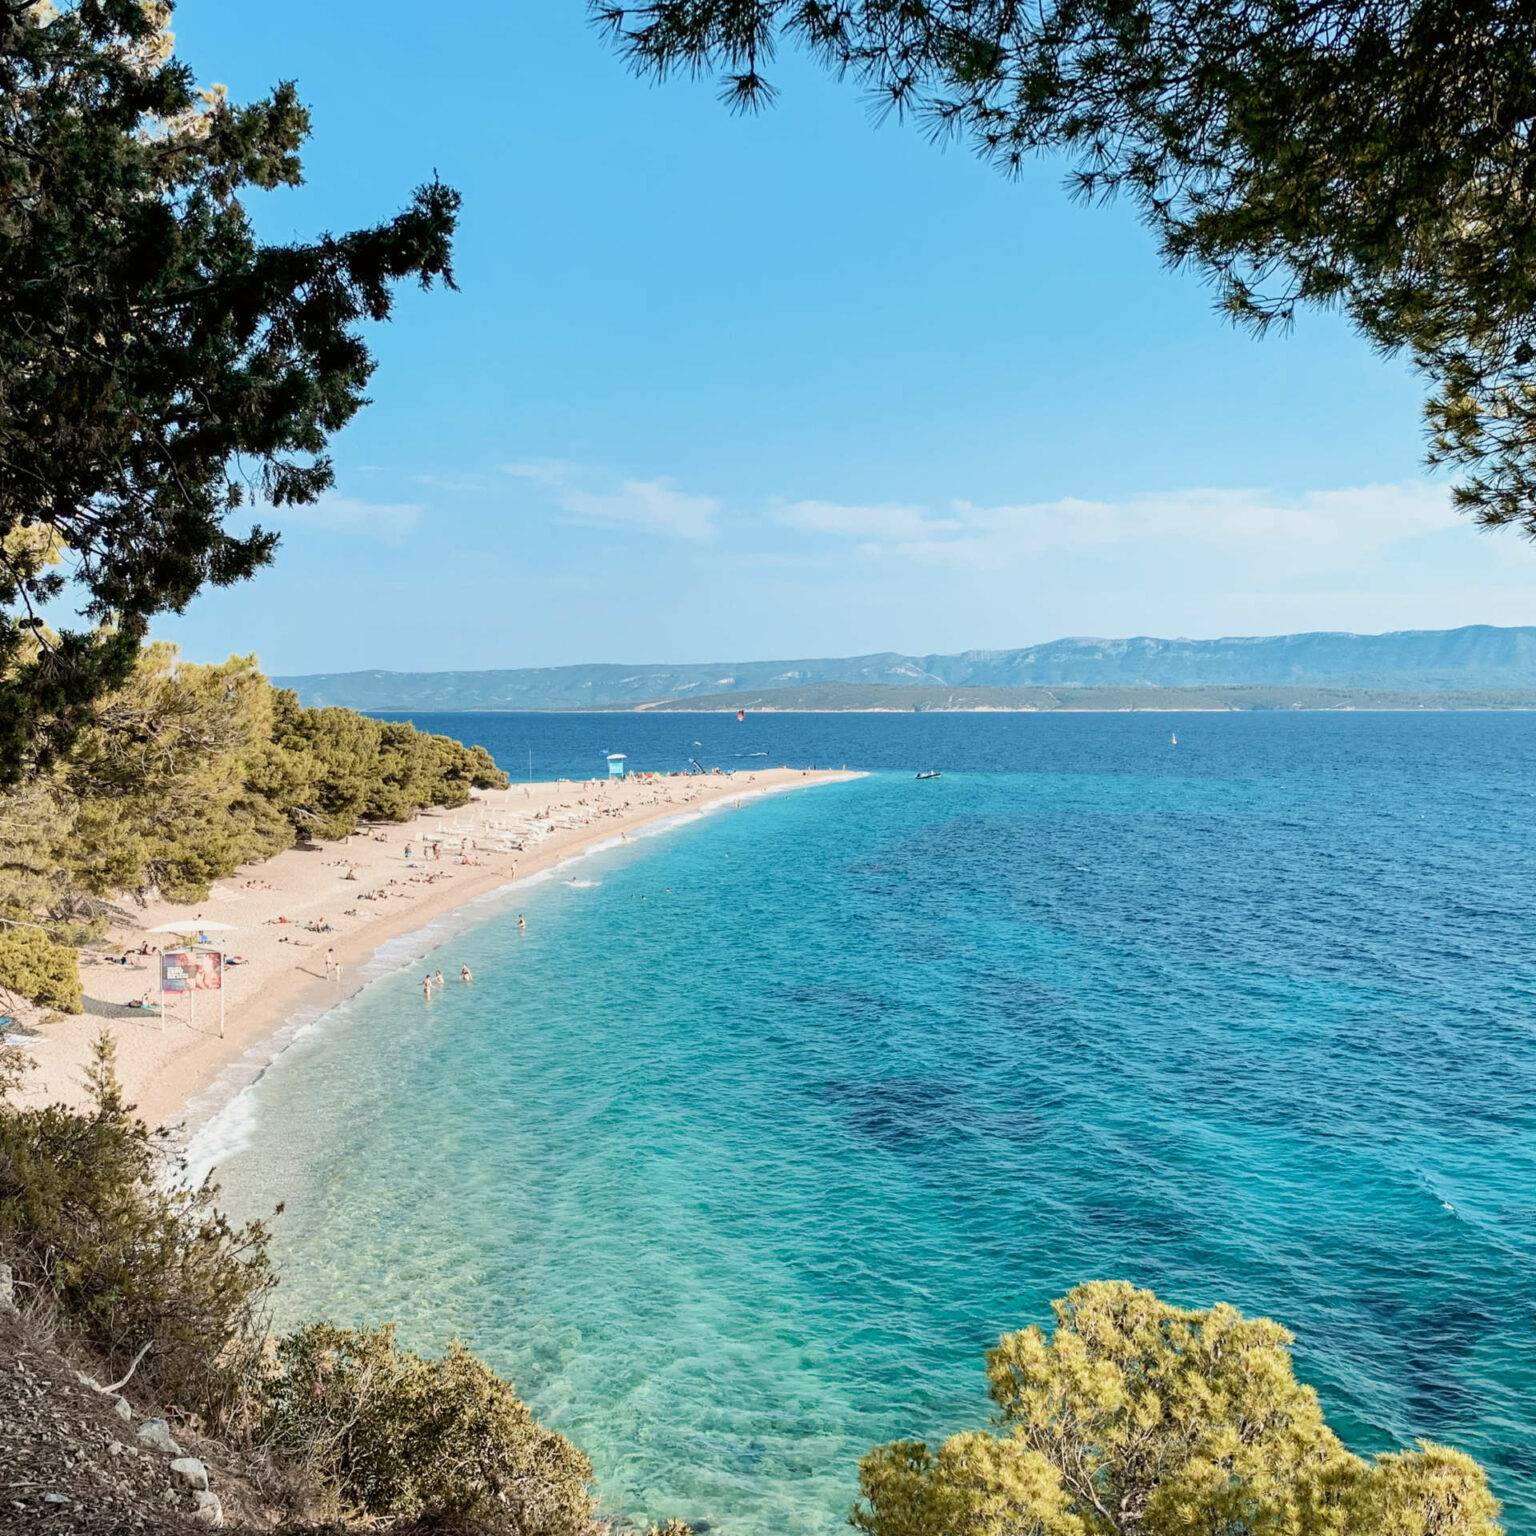 Blick durch Bäume auf den Sandstrand "Goldenes Horn" in Kroatien, der Reisende mit seinem türkisblauen Meer zum Baden einlädt.